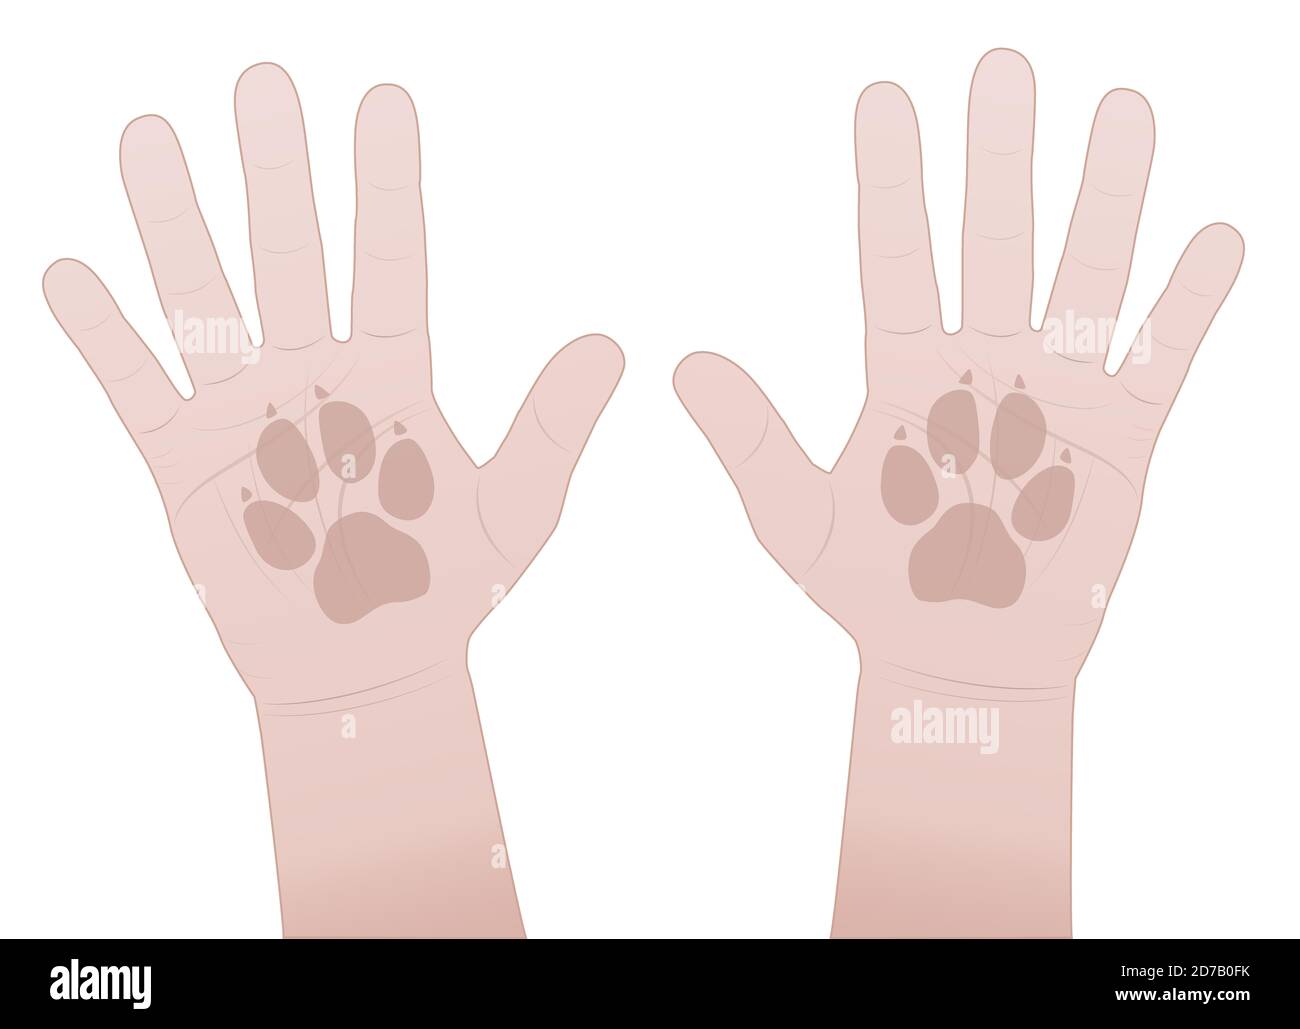 Claquer les mains, le chien. Donnez-moi cinq symboles avec des mains humaines et des empreintes de pattes de chiens - illustration de bande dessinée sur fond blanc. Banque D'Images